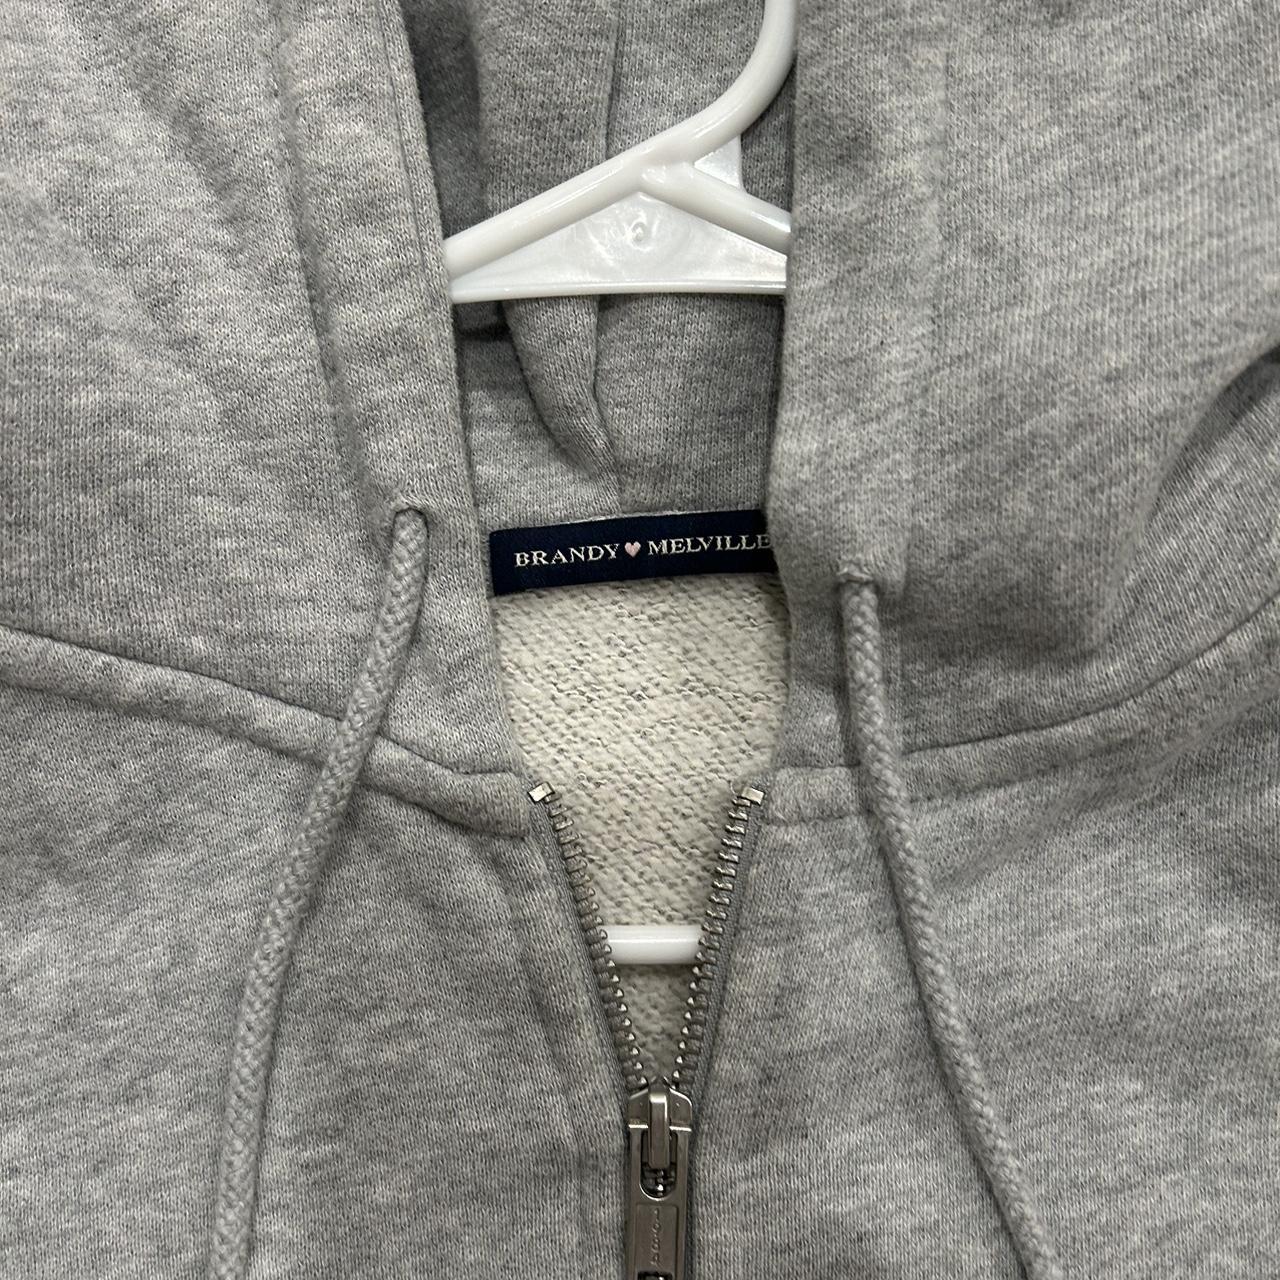 BRANDY MELVILLE cropped grey zip up hoodie (last